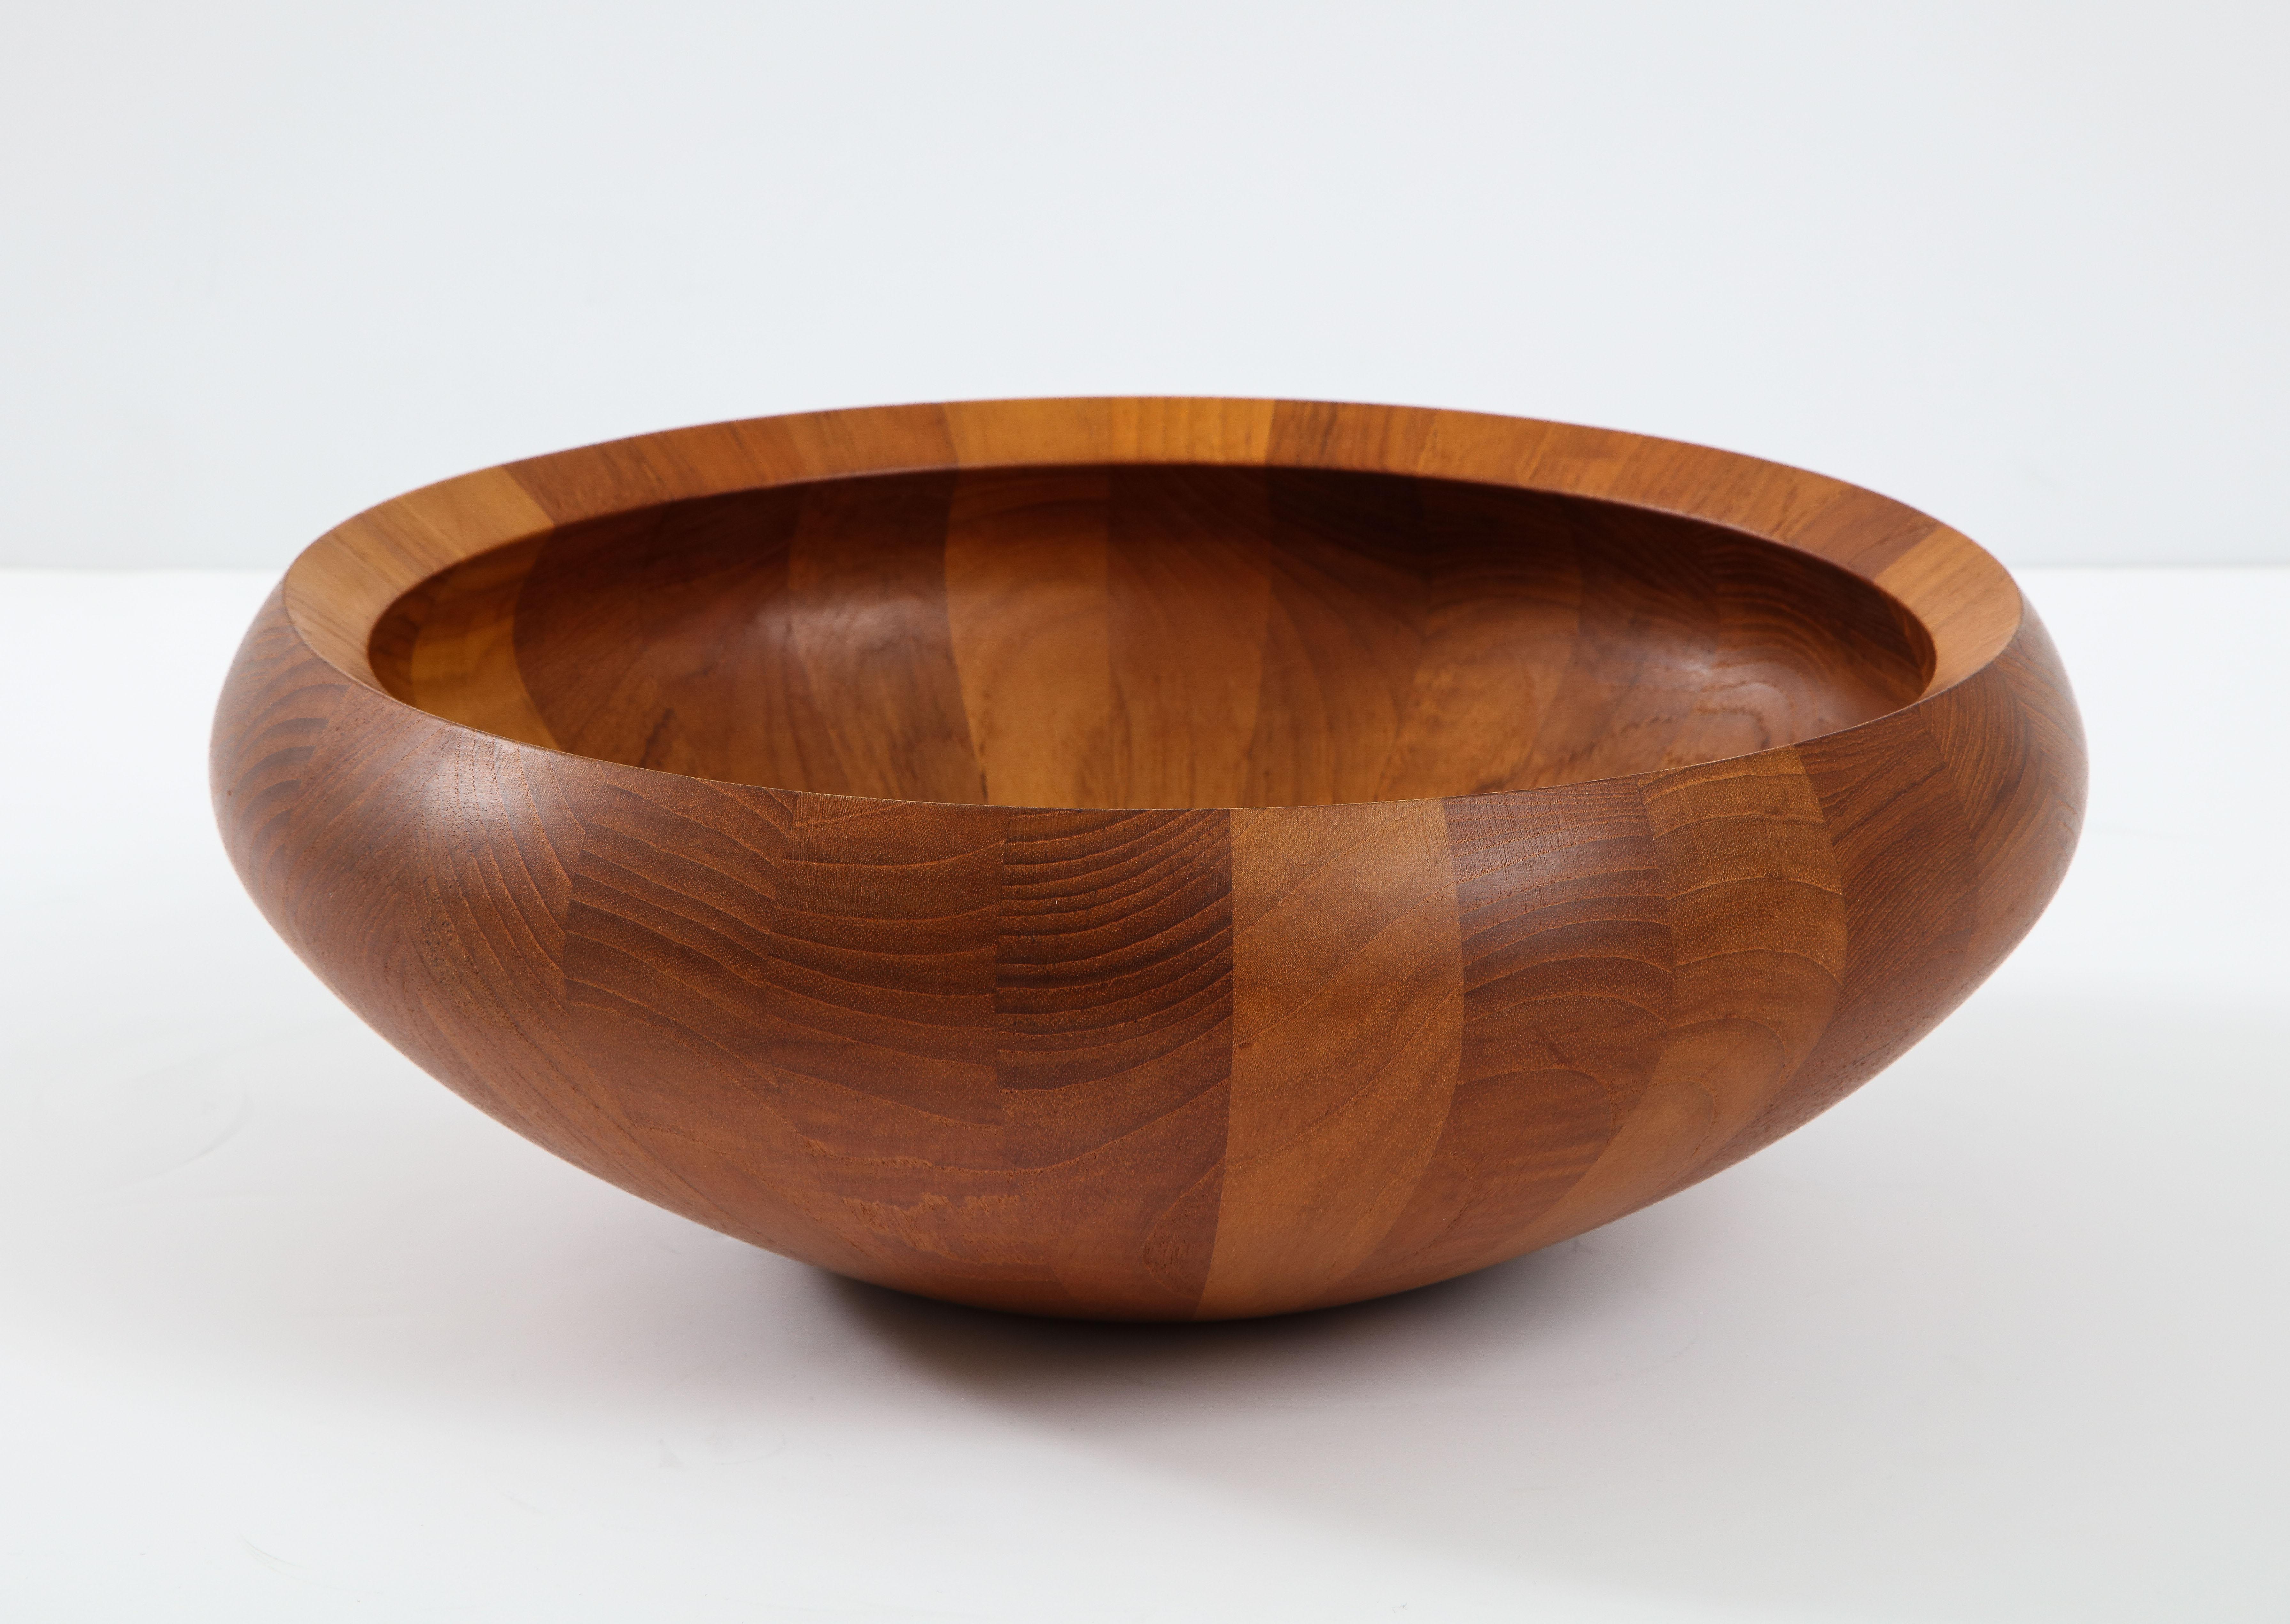 1960s Mid-Century Modern teak bowl designed by Jens H. Quitsgaard for Dansk Denmark.